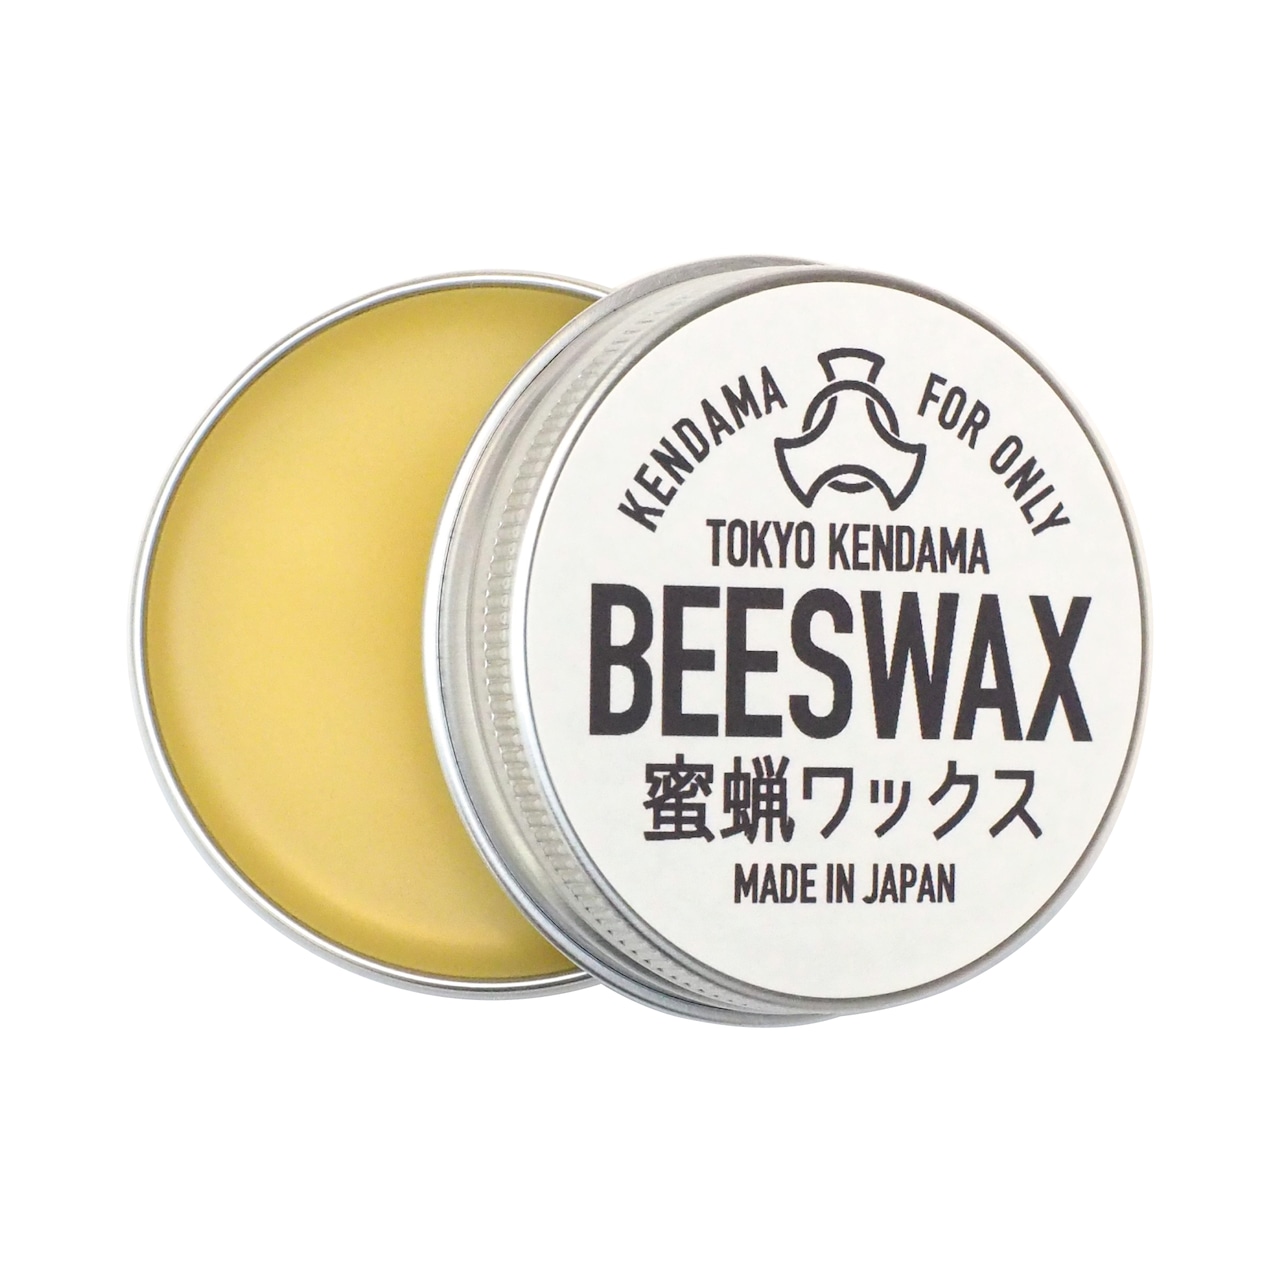 BEES WAX MAINTENANCE SET けん玉専用 蜜蝋ワックス メンテナンスセット